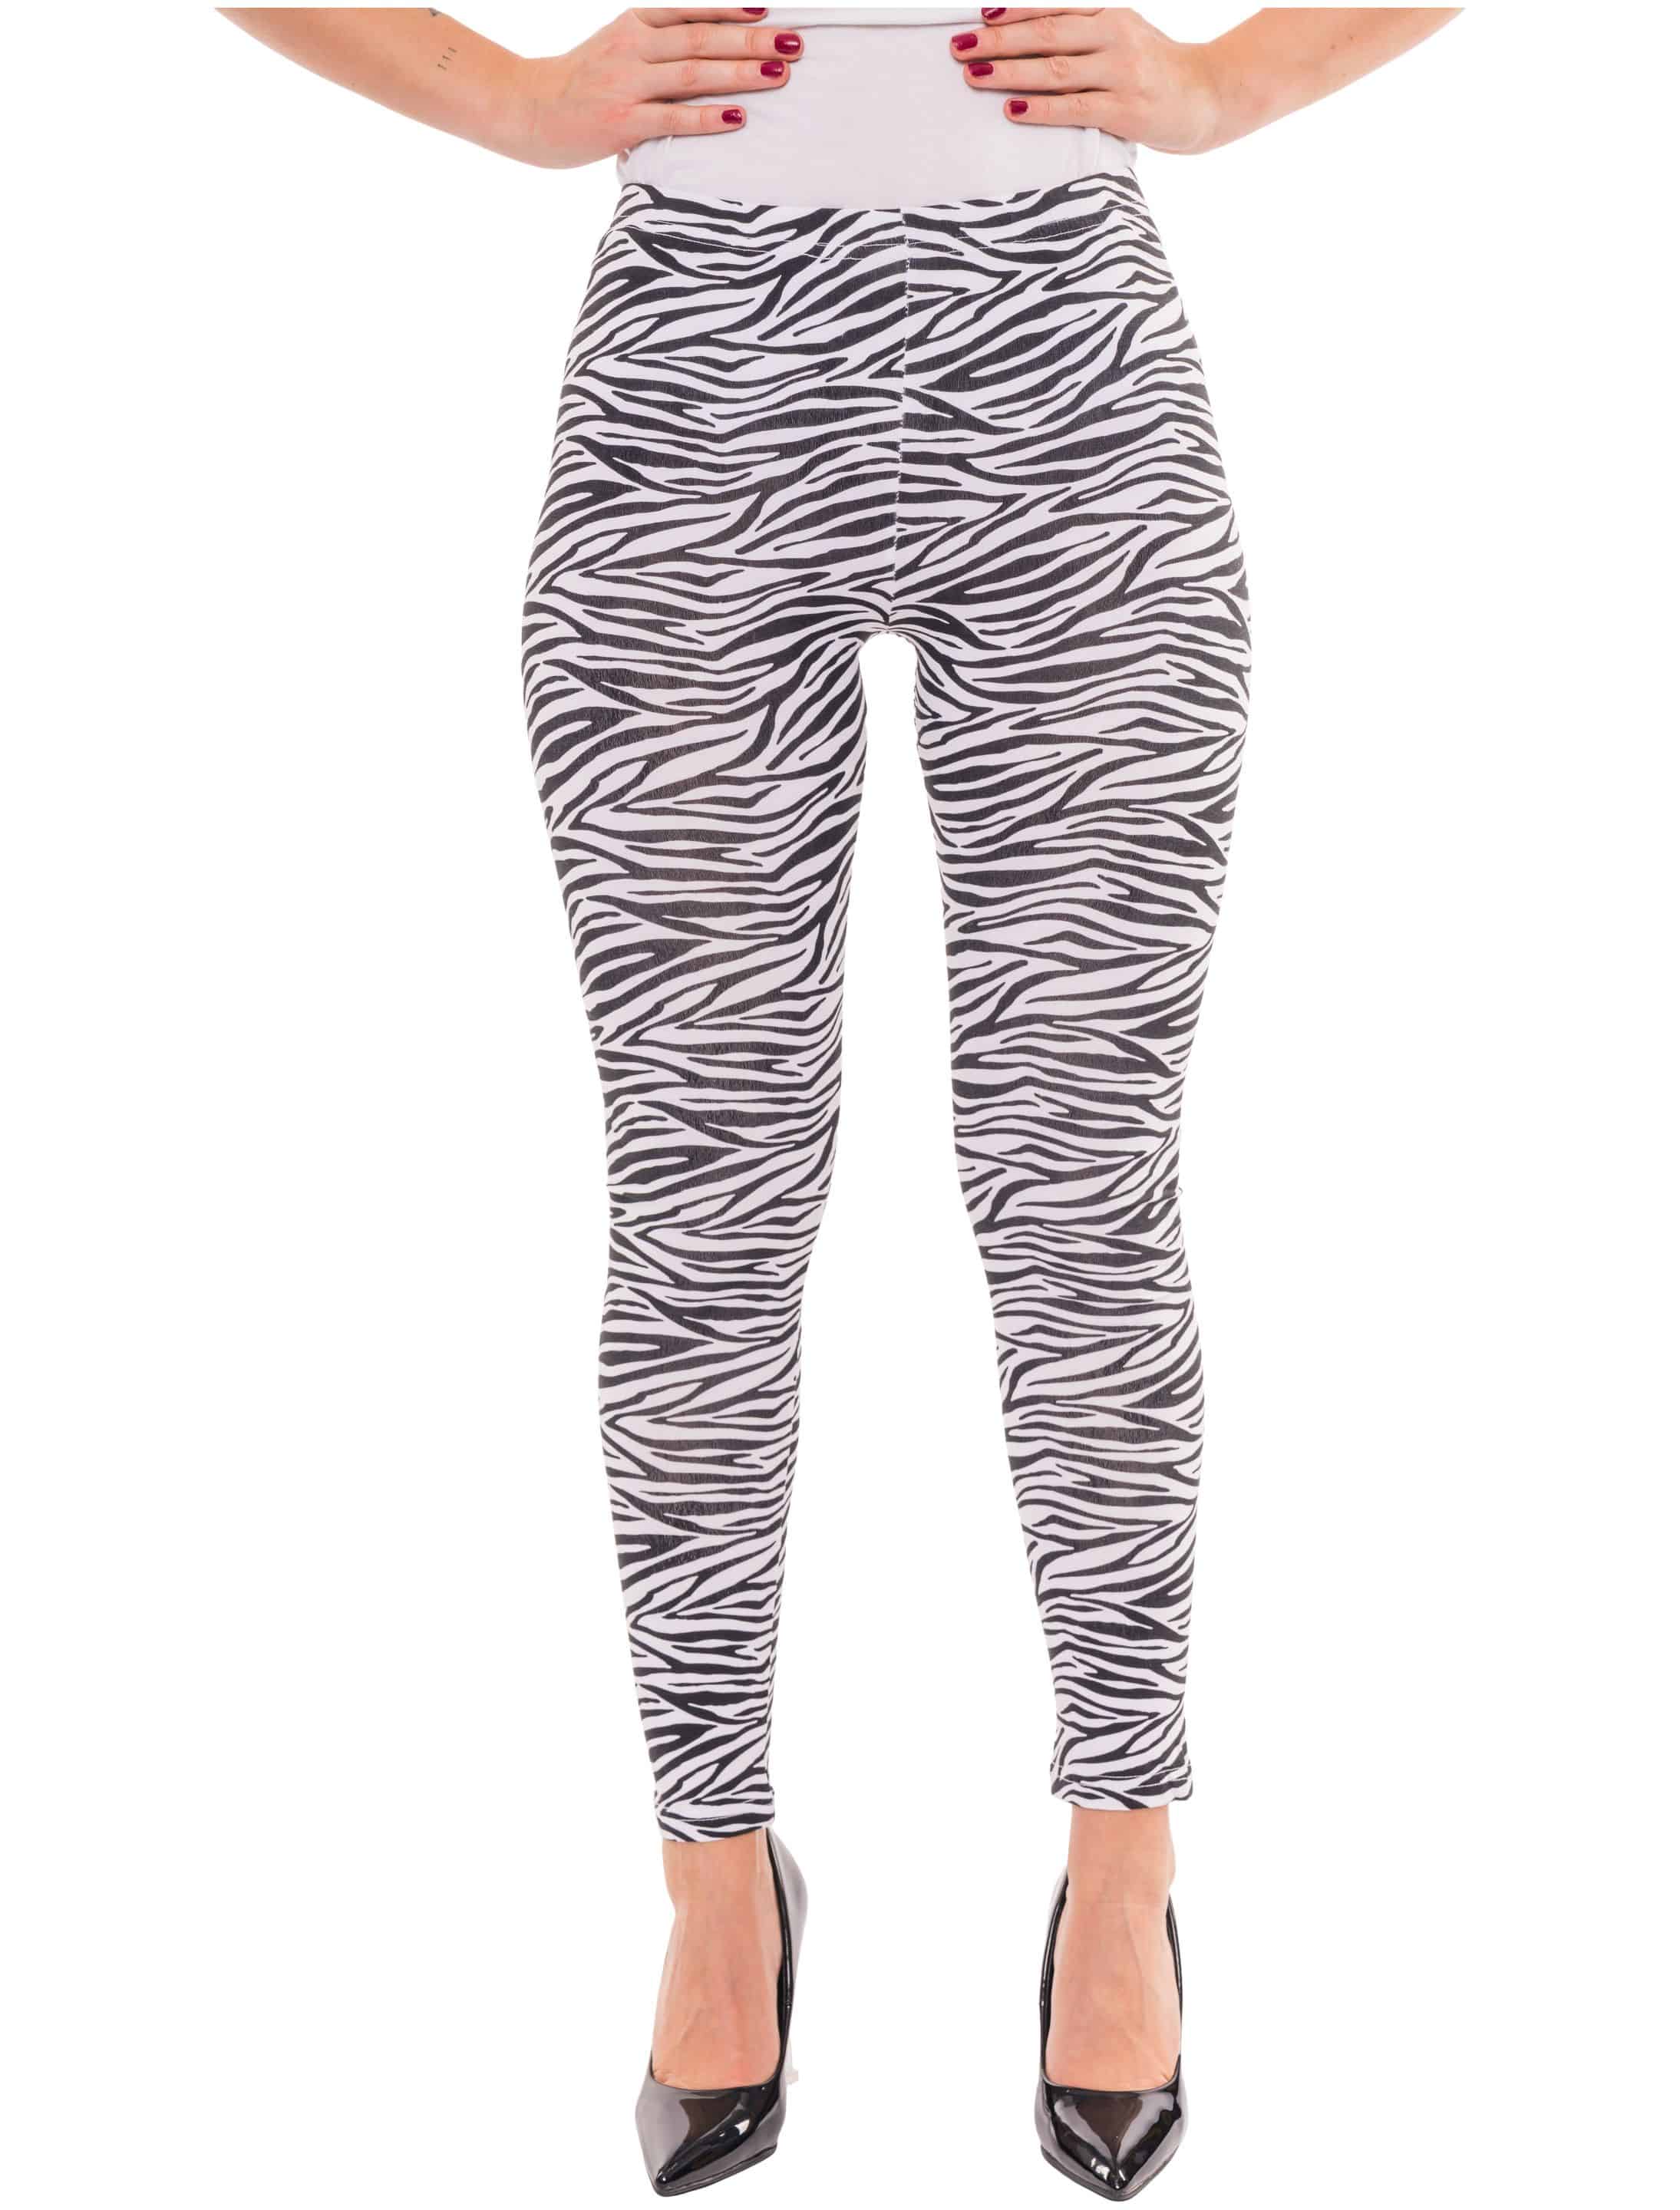 Leggings Zebra Damen schwarz/weiß L/XL